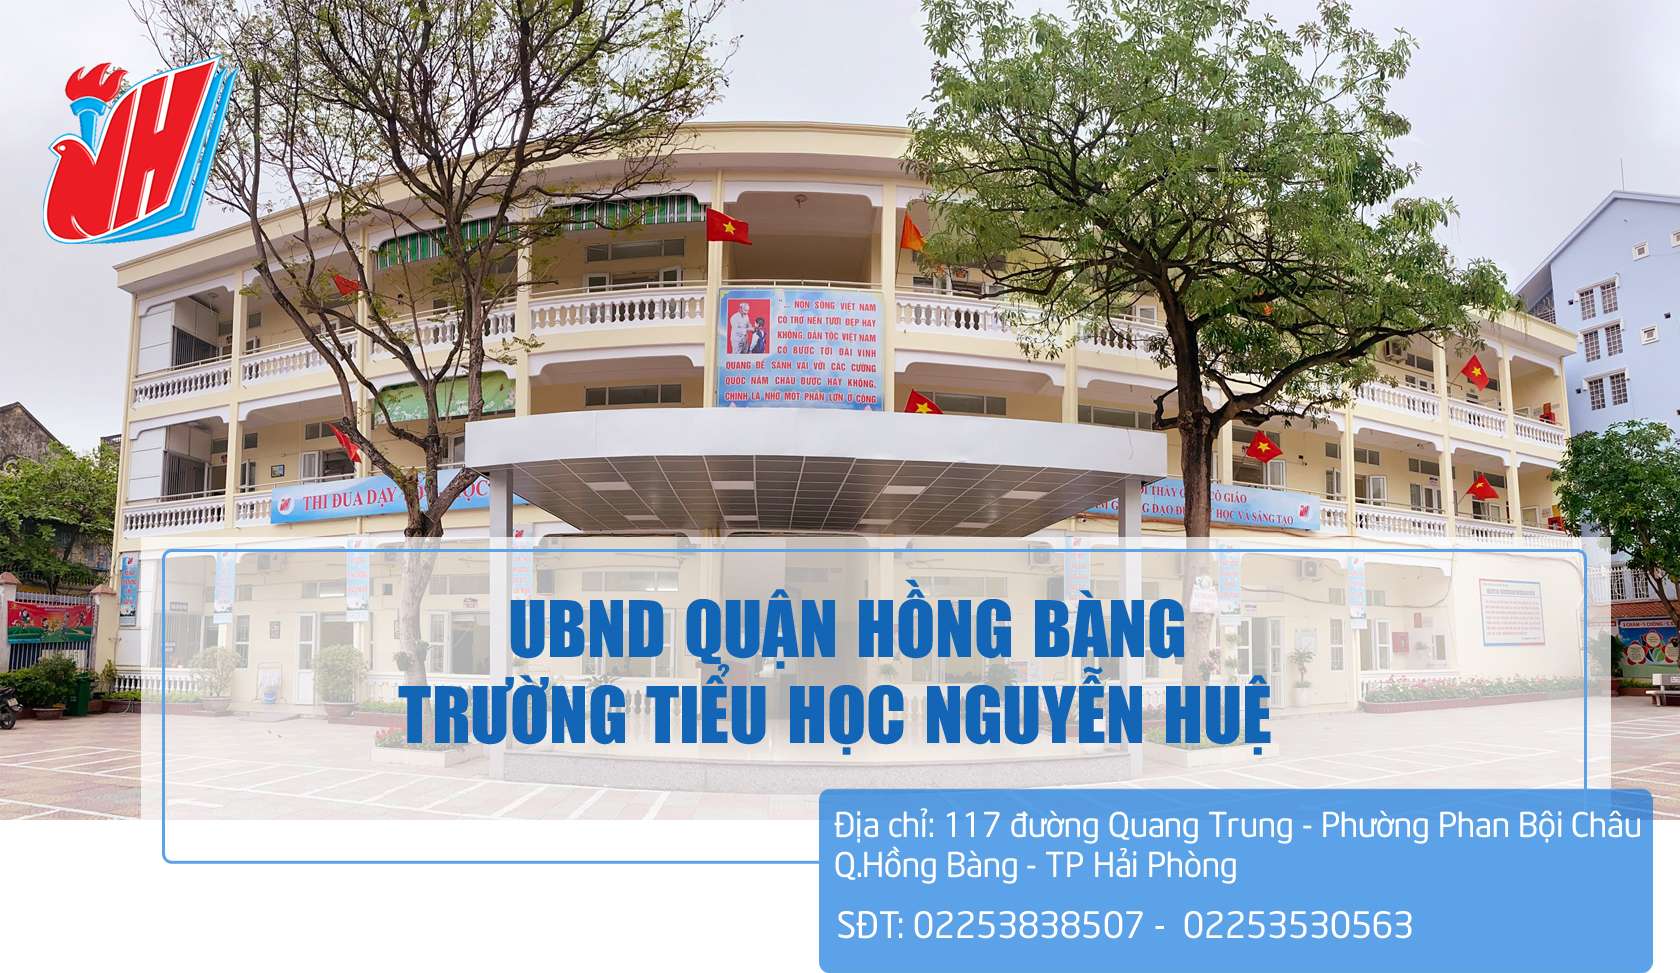 Khái quát về trường Tiểu học Nguyễn Huệ.